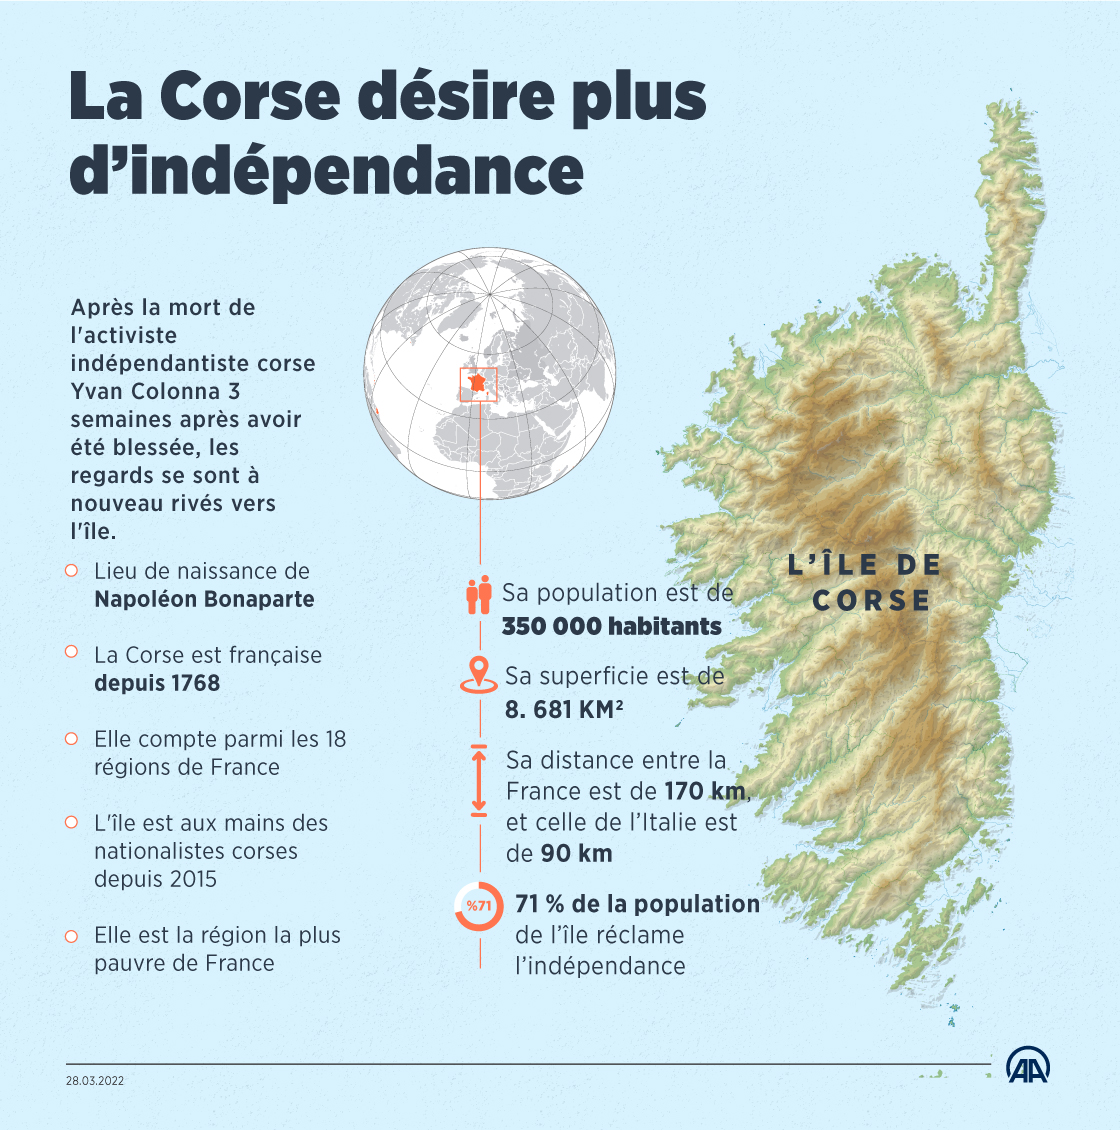 La Corse désire plus d’indépendance